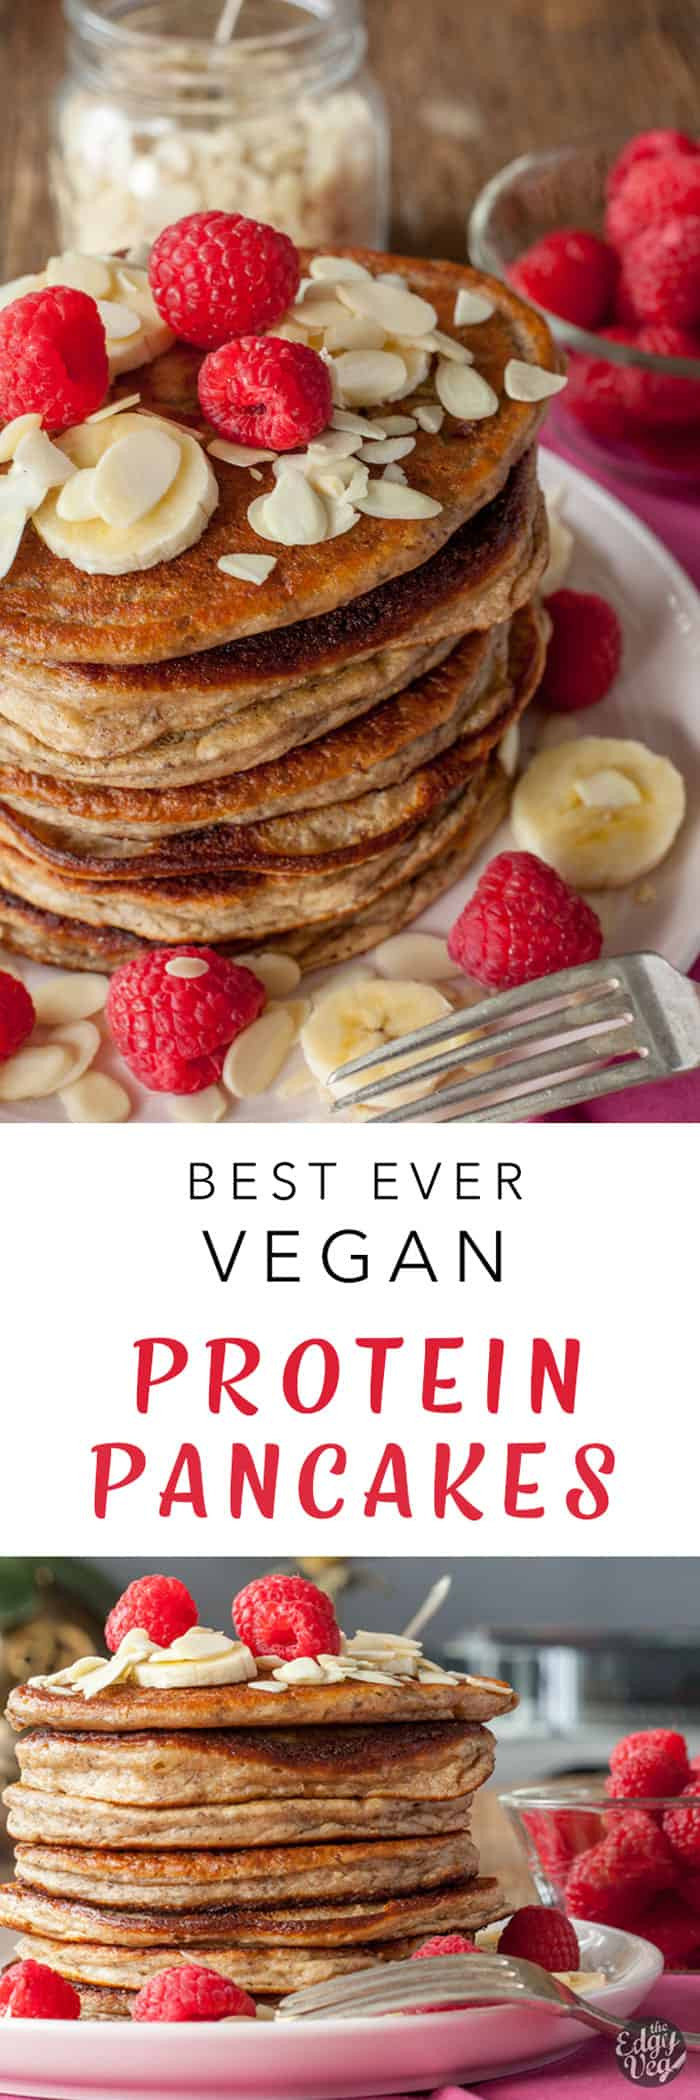 Vegan Protein Pancakes Gluten Free
 Vegan Protein Pancakes Gluten Free Pancakes